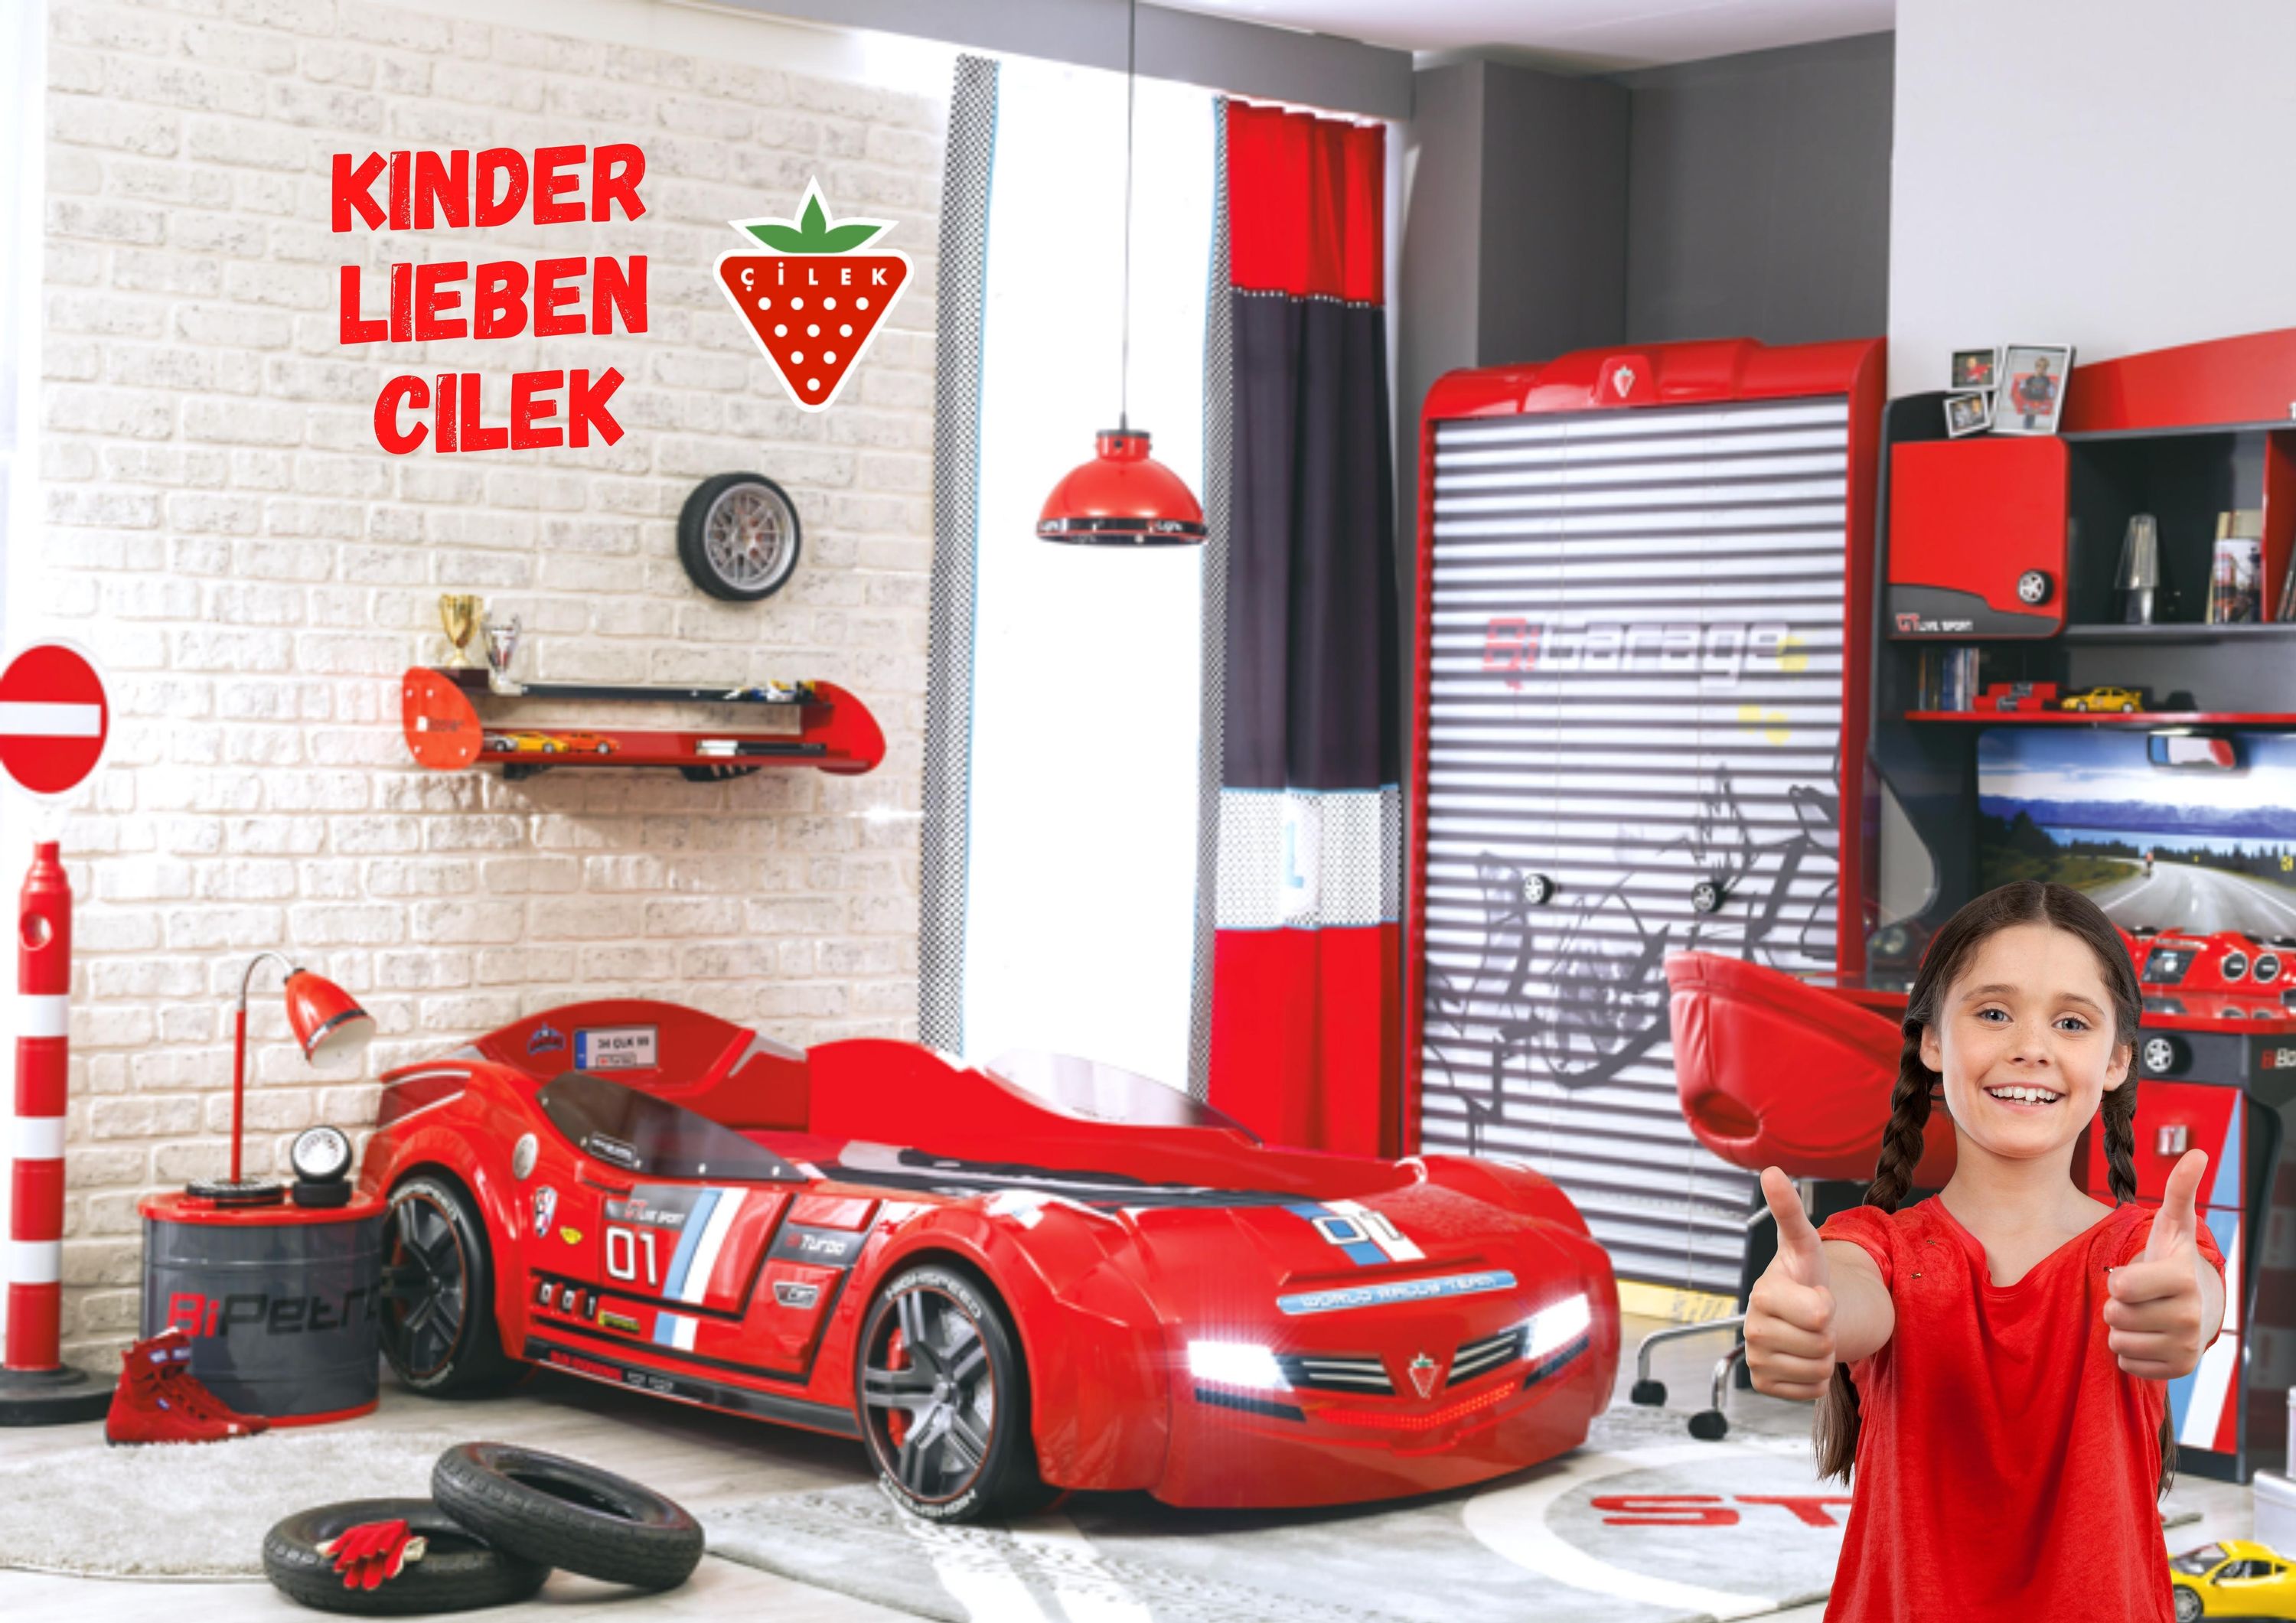 Cilek Champ Kinderzimmer 3-teilig mit Autobett High Speed in Rot  Komplettzimmer, Kindermöbel und vieles mehr